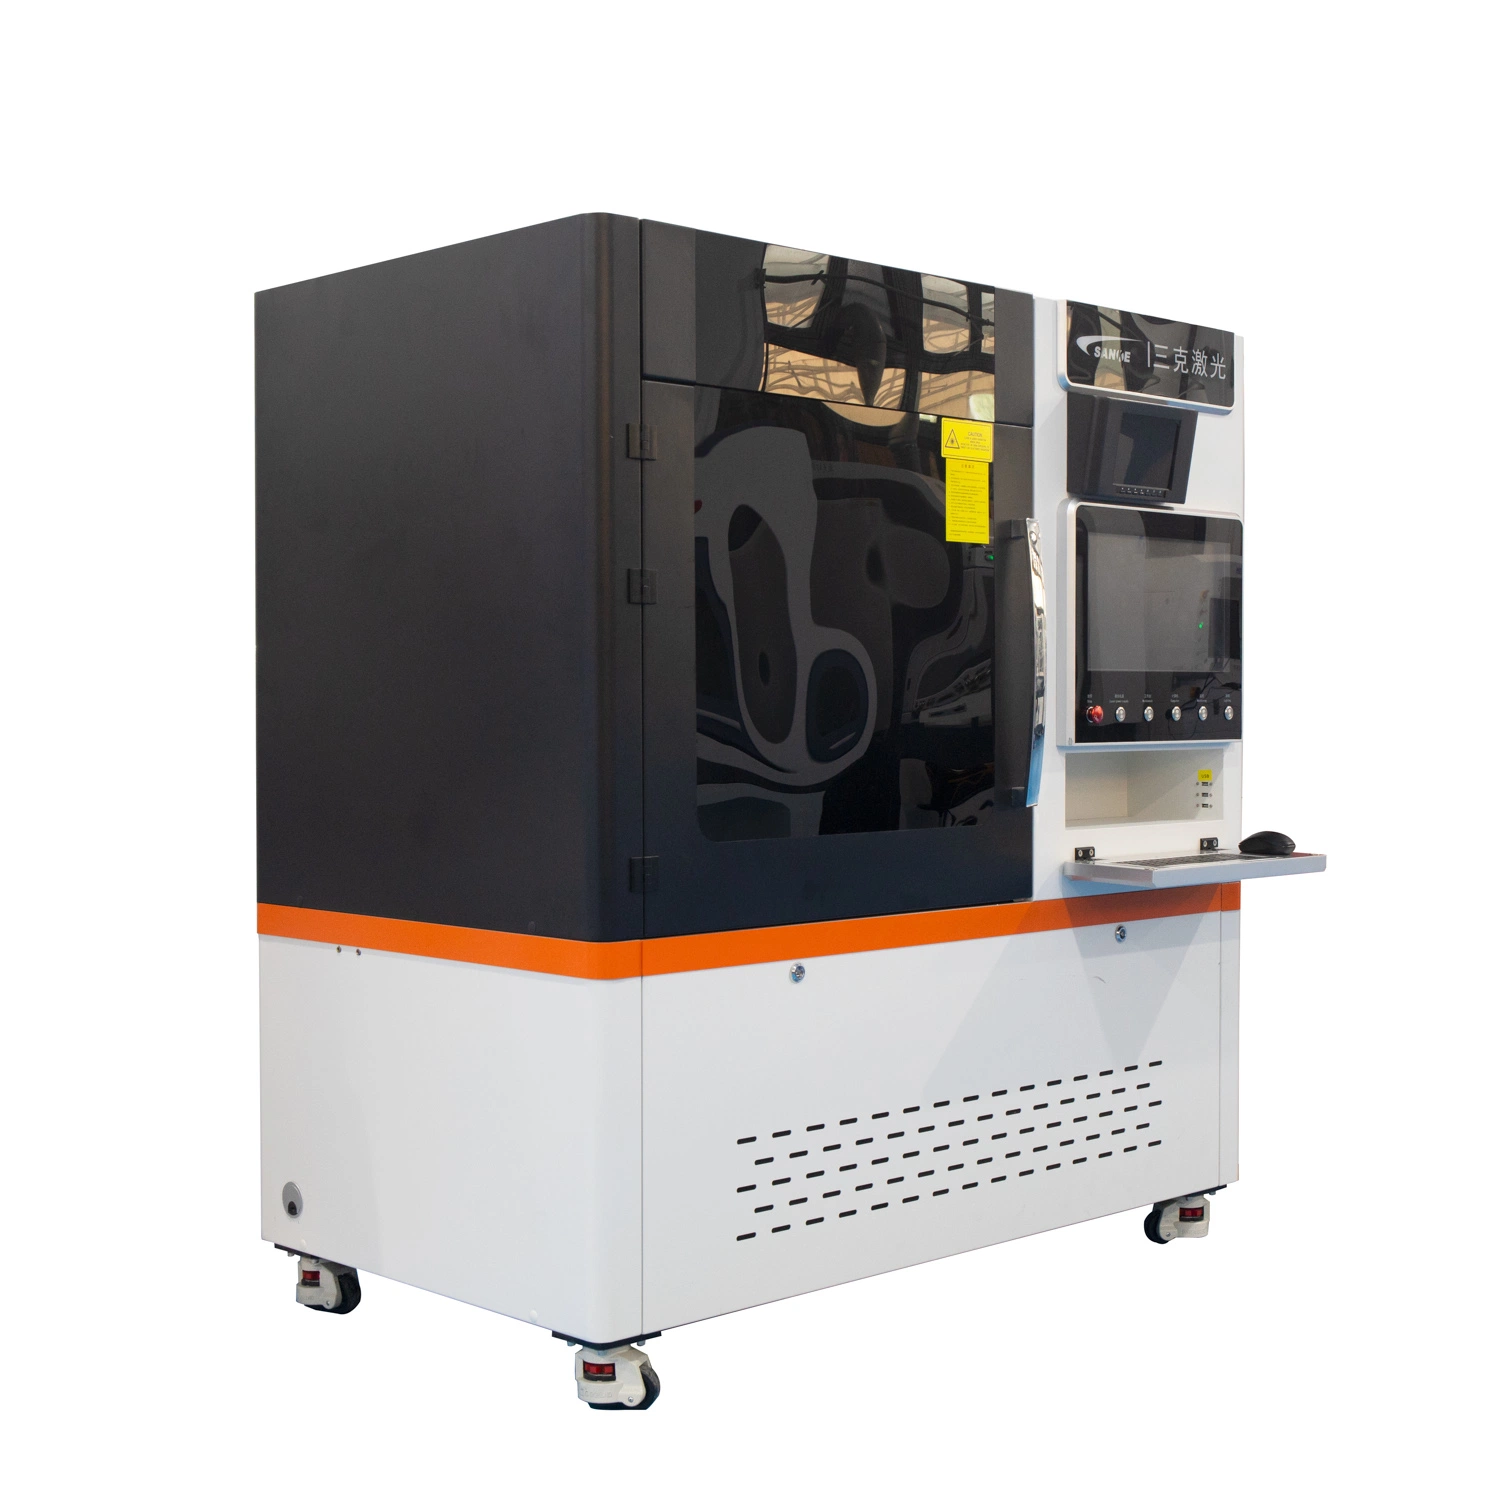 PCD Superhard PCBN de alta potência com máquina de corte de fibra a laser